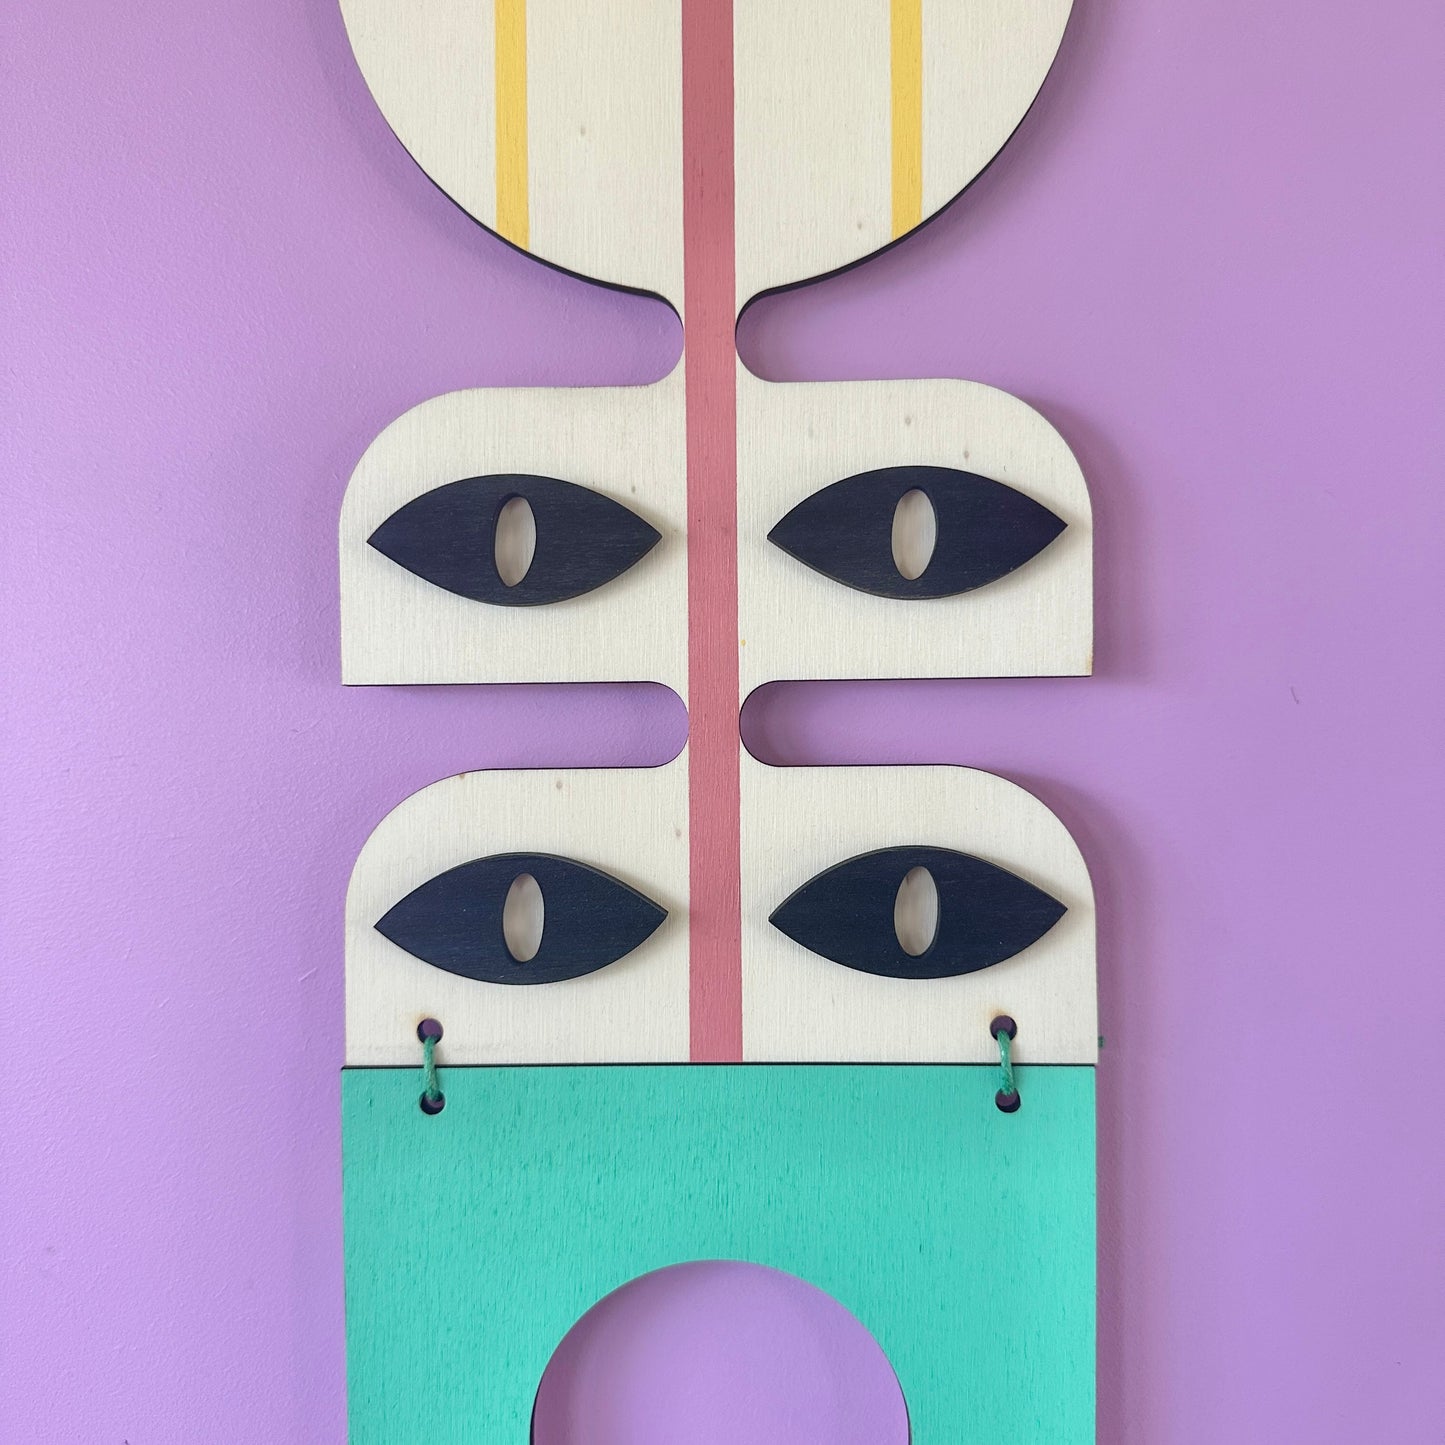 Modern Art Gallery Wall - Pop Art Style - Geometric Wall Hangings